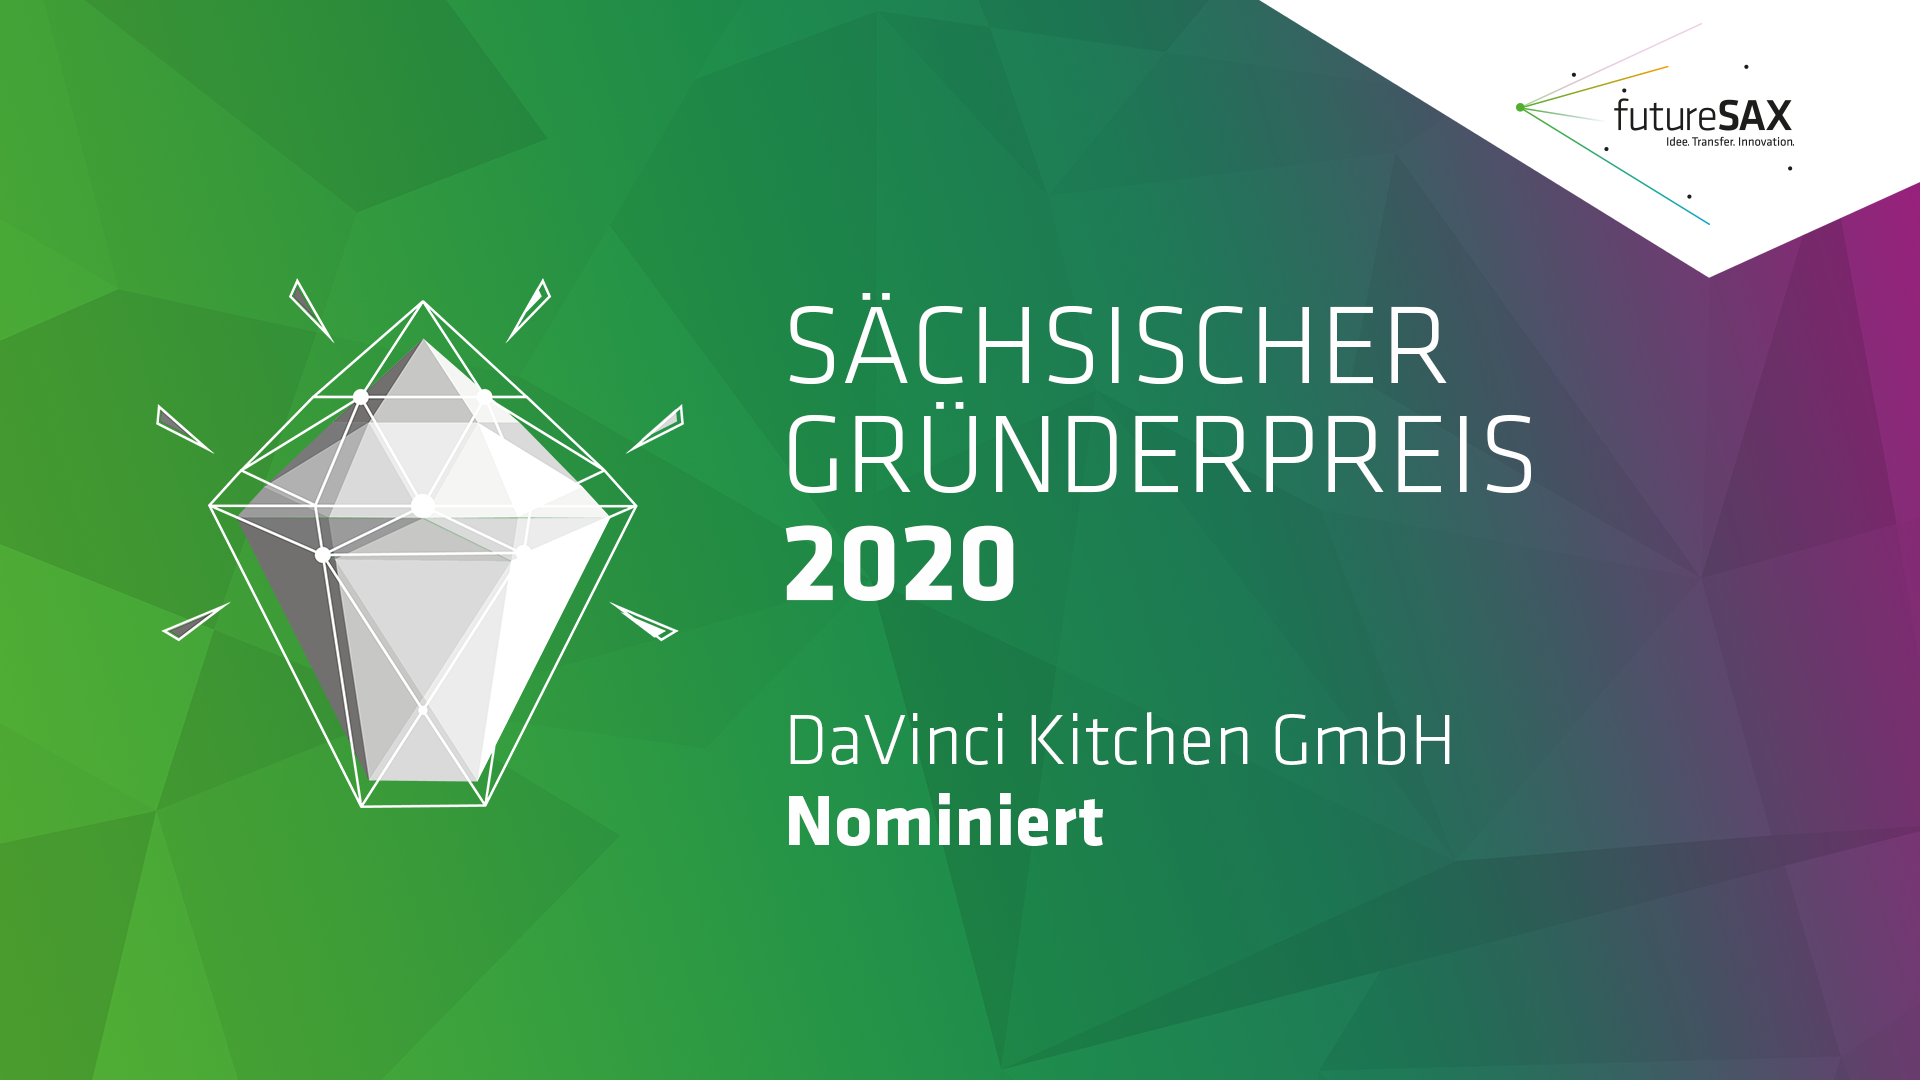 DaVinci Kitchen wurde beim Sächsischen Gründerpreis 2020 nominiert. 